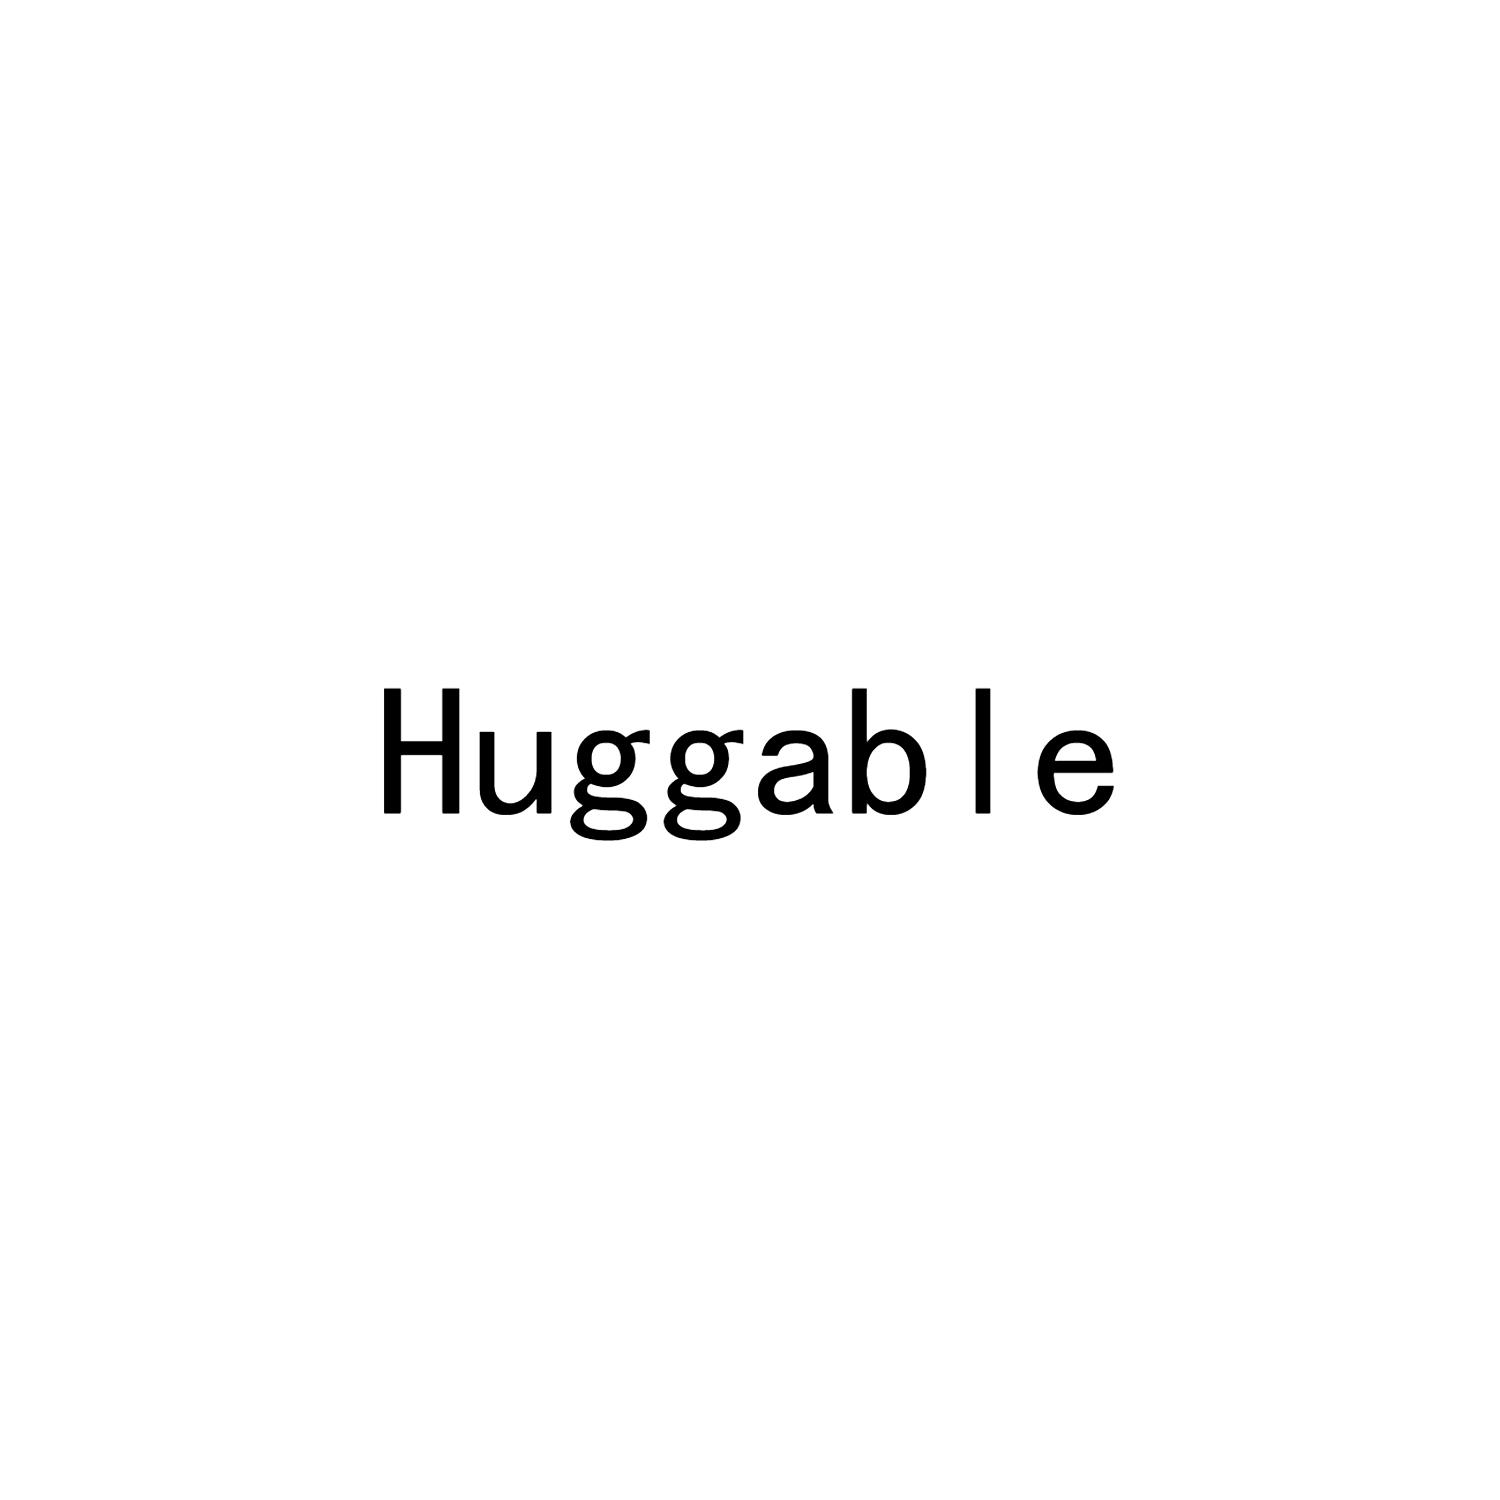  em>huggable /em>